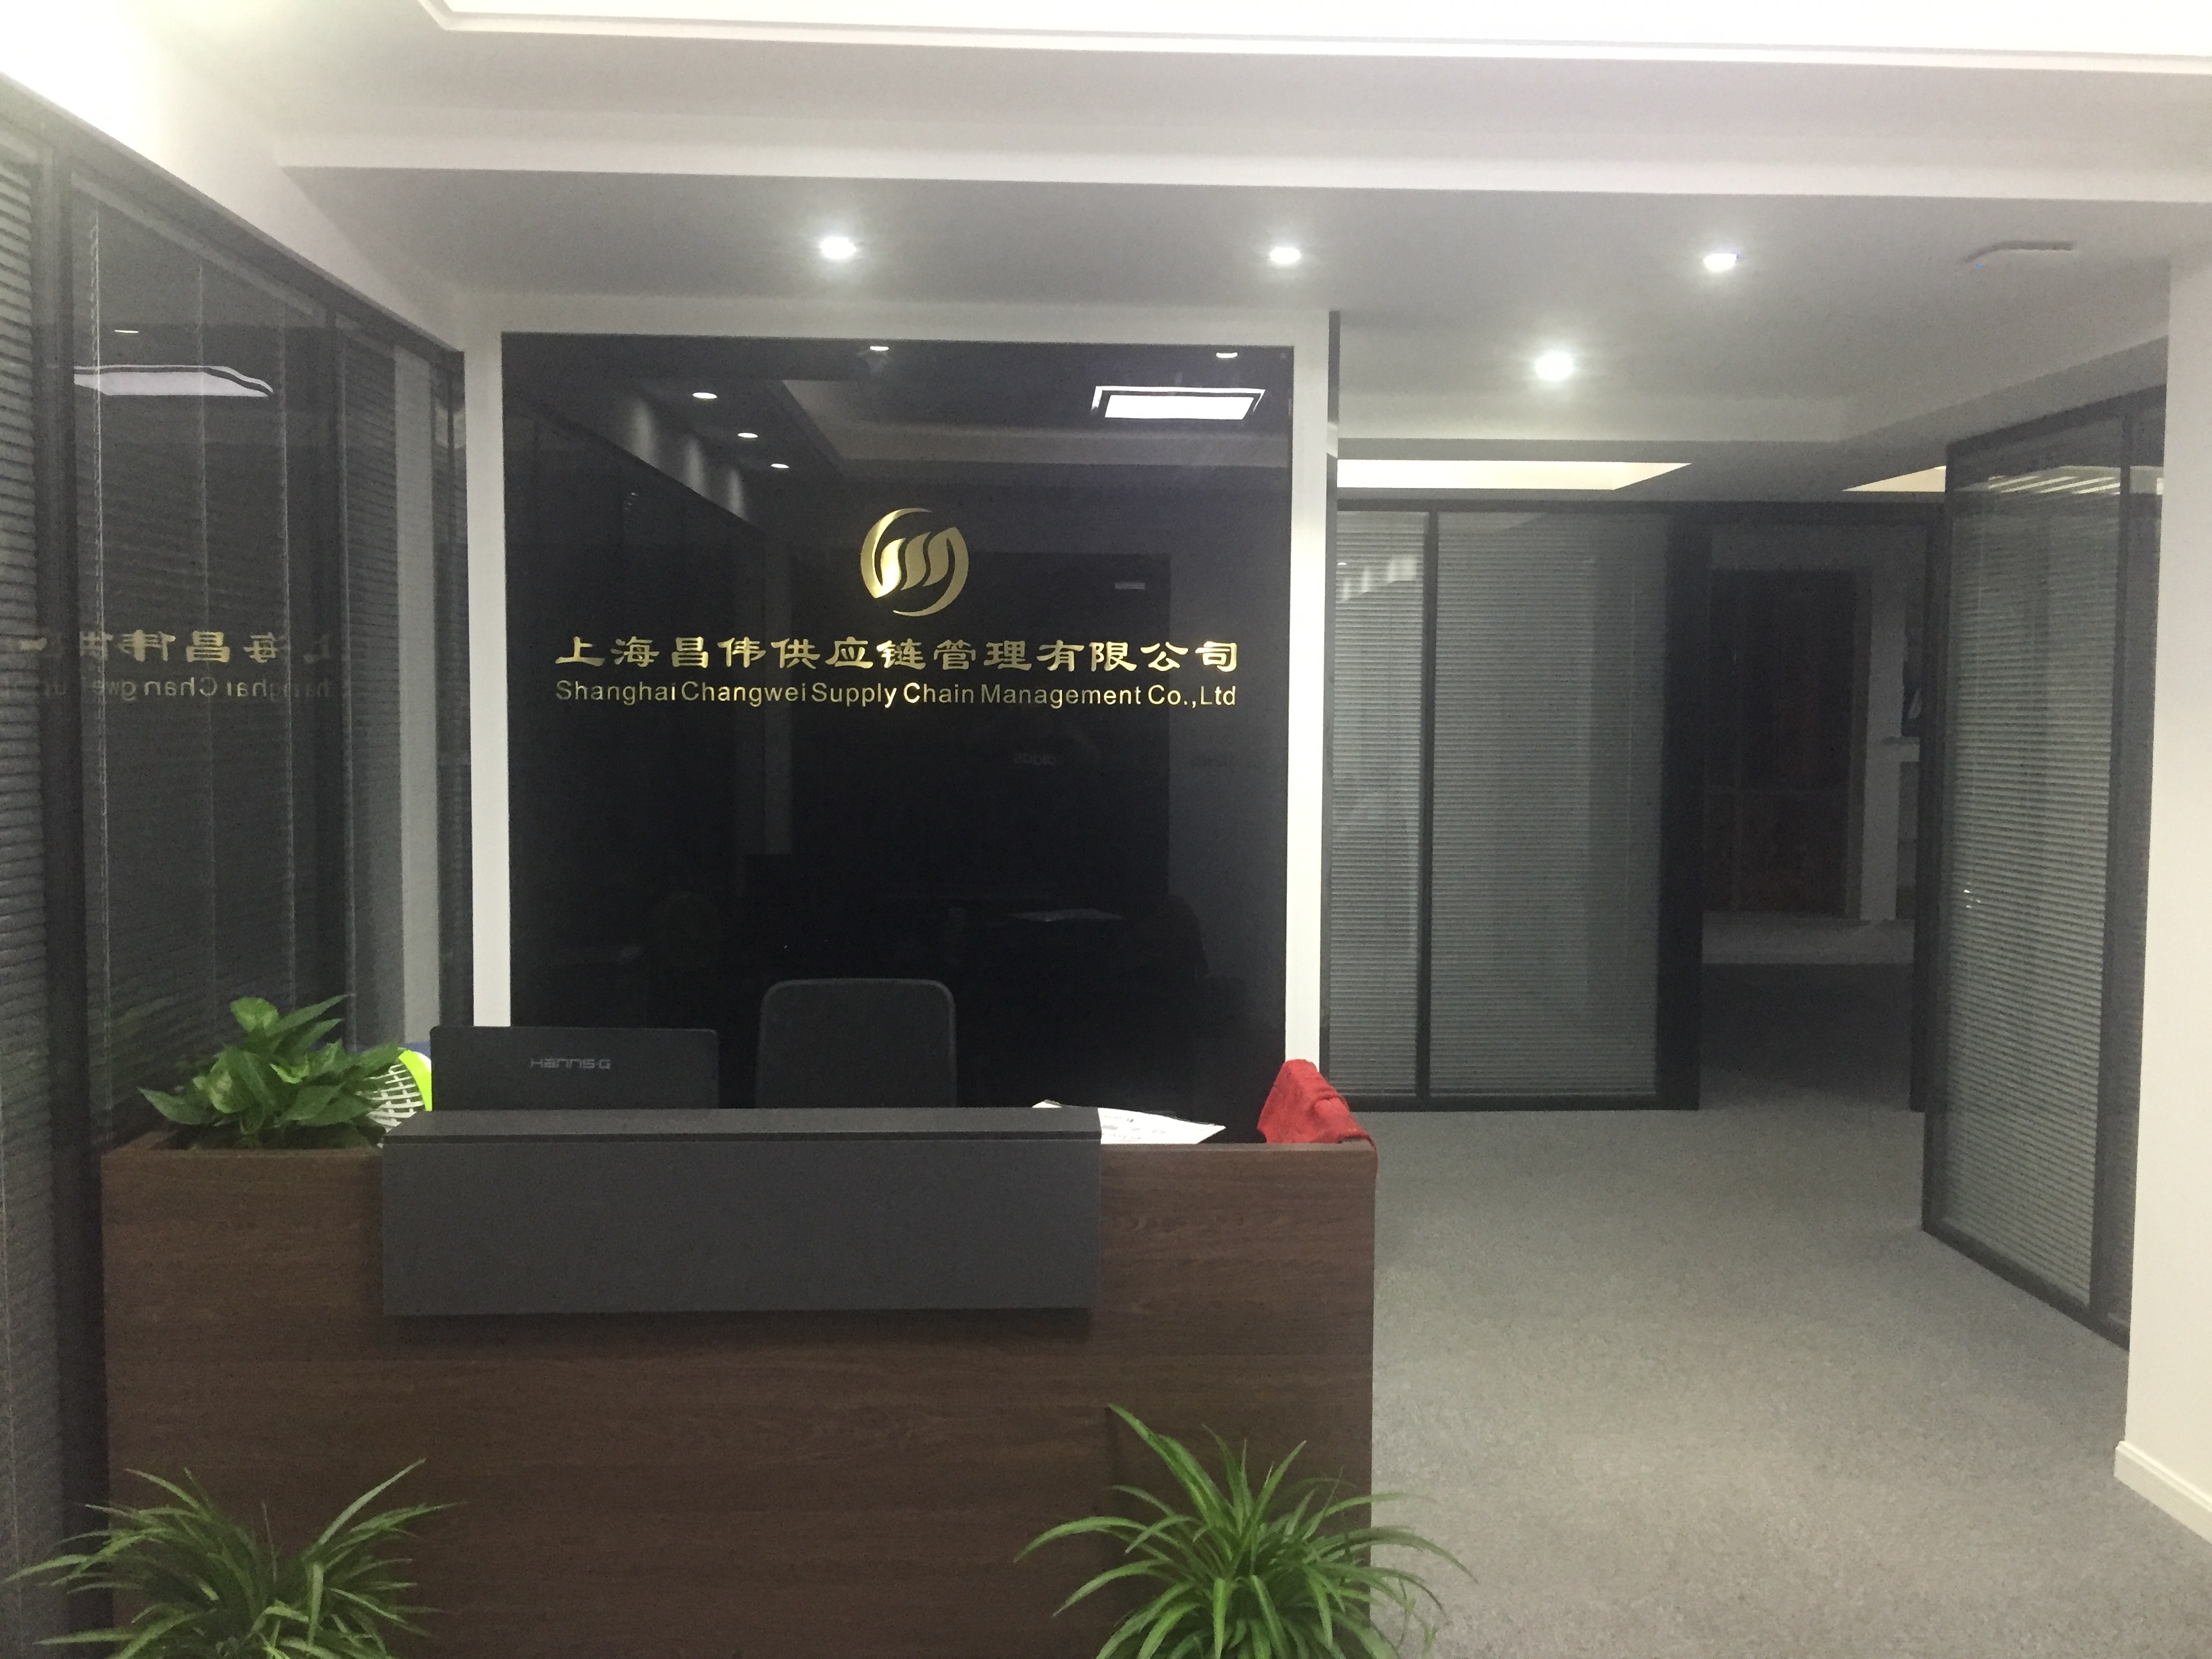 上海昌伟供应链公司会议室音箱系统案例